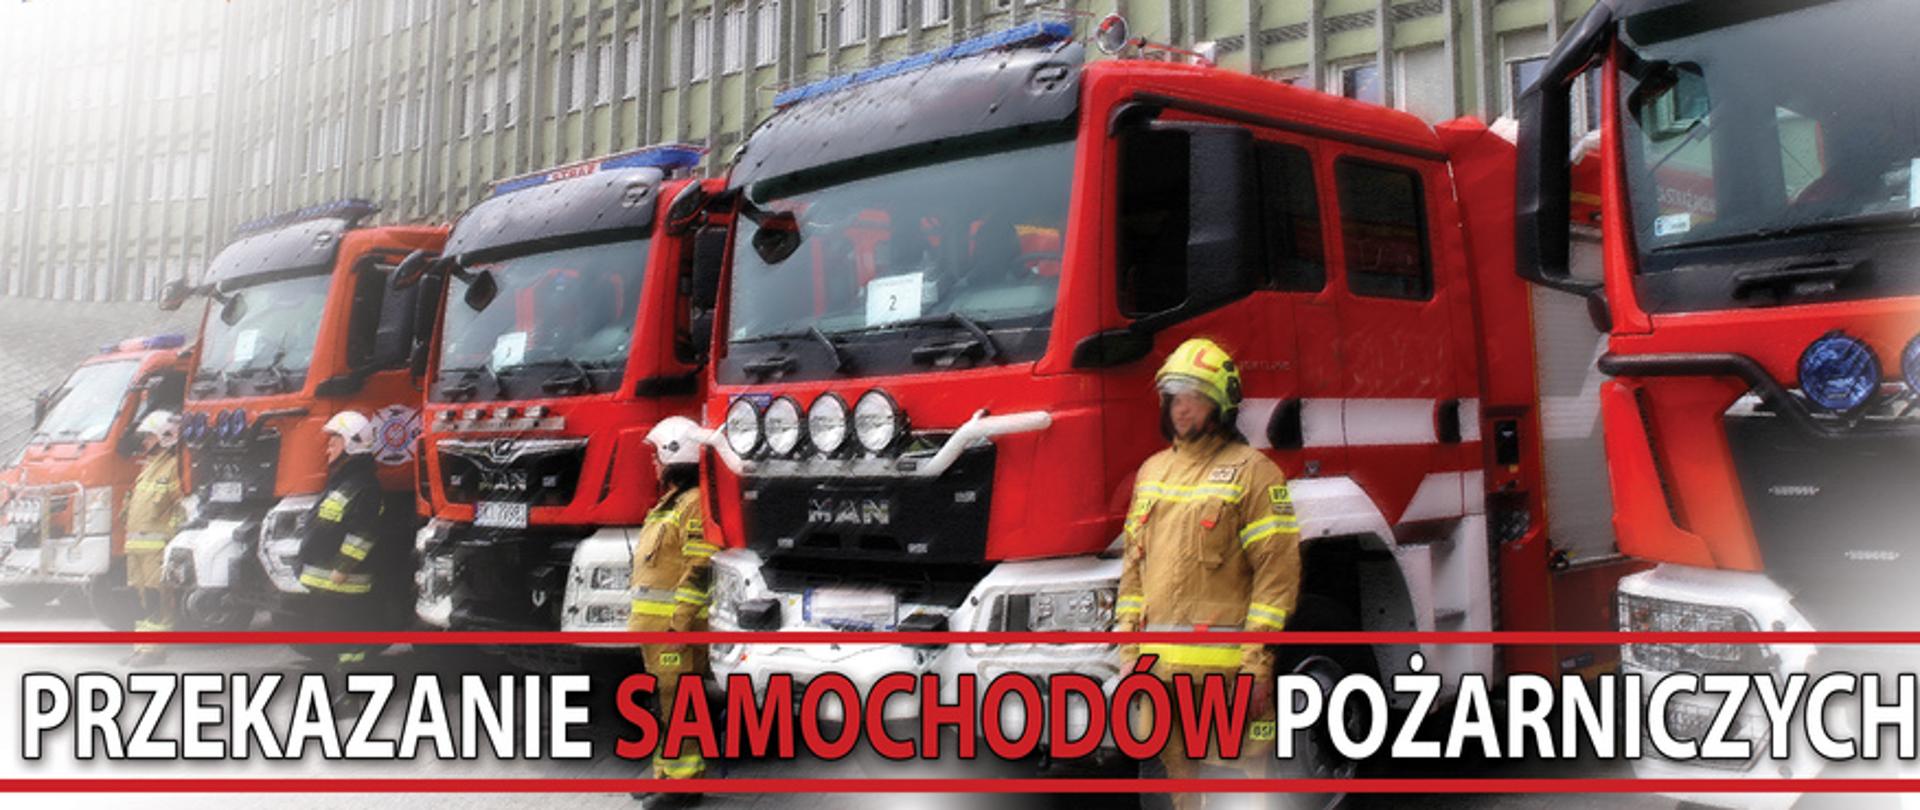 Na zdjęciu widzimy pojazdy pożarnicze stojące przed wieżowcem Urzędu Wojewódzkiego w Kielcach. Przed pojazdami stoją strażacy w piaskowych mundurach. na dole napis: "Przekazanie Samochodów Pożarniczych".